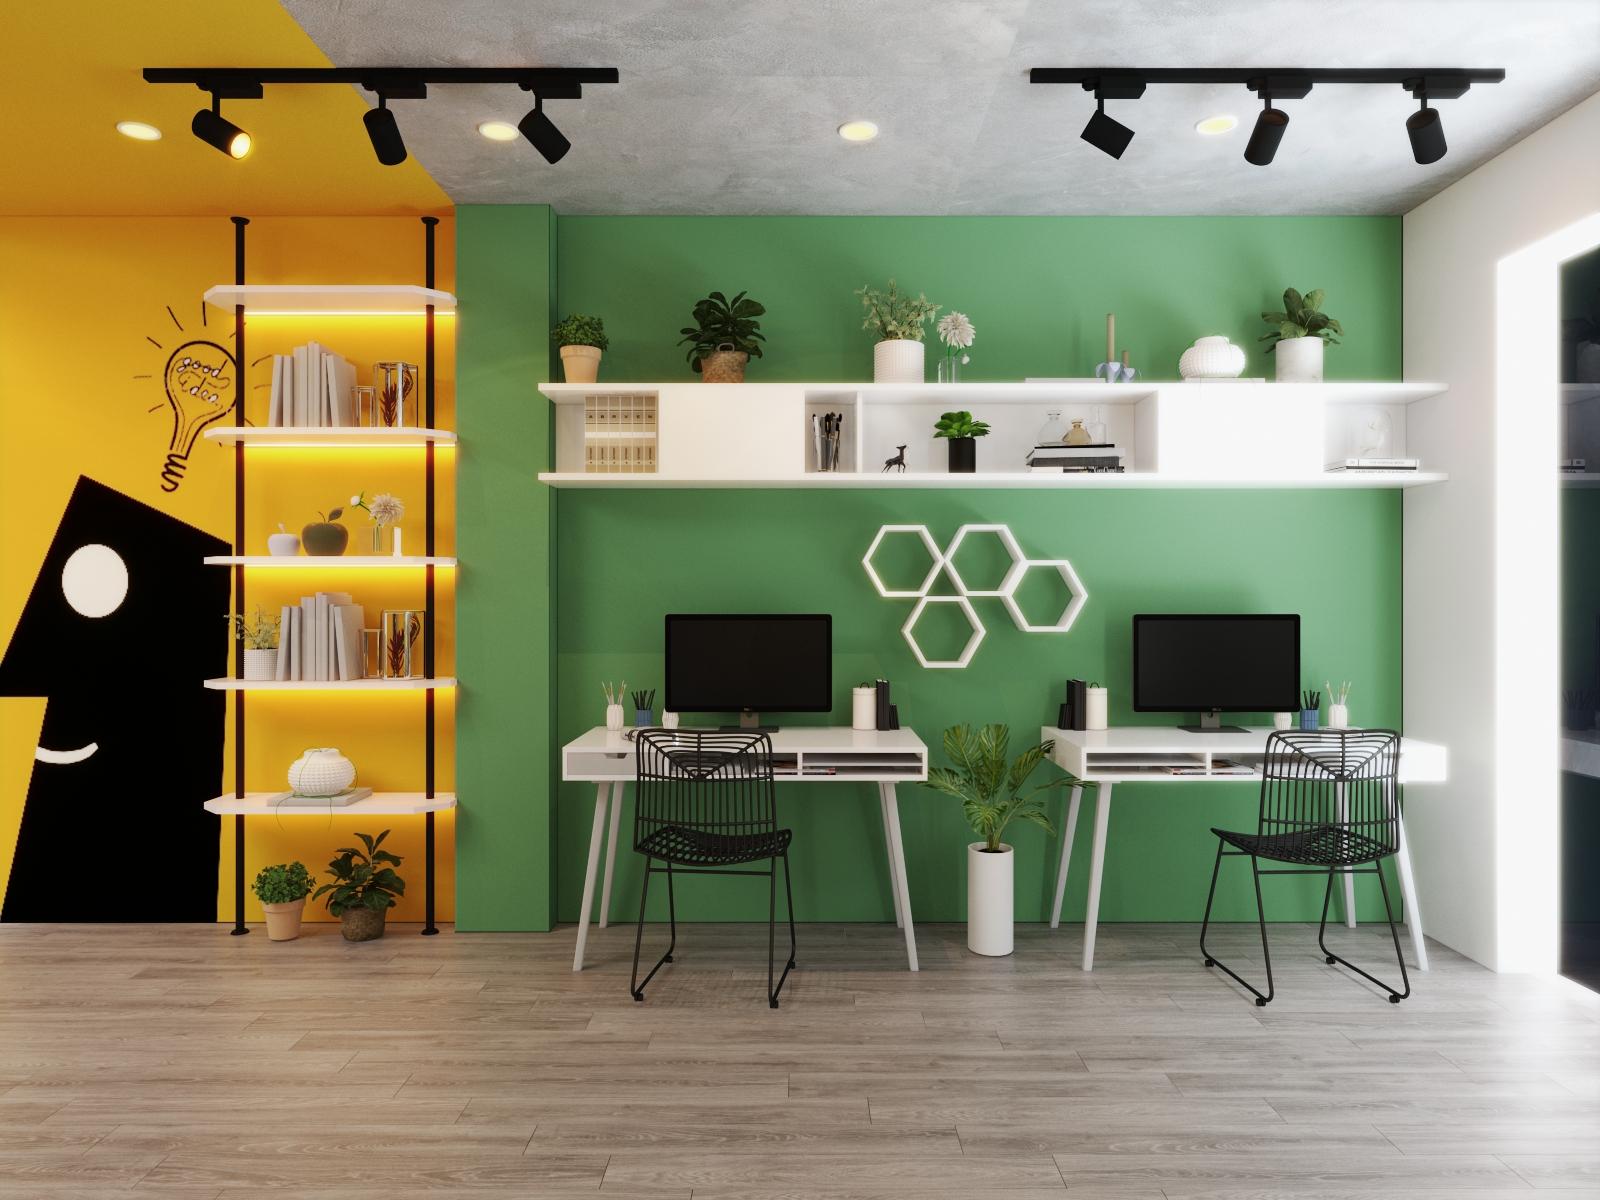 Sàn gỗ xám nhẹ nhàng giúp cân bằng bảng màu cho văn phòng, đồng thời mang lại cảm giác rộng thoáng hơn cho không gian. 